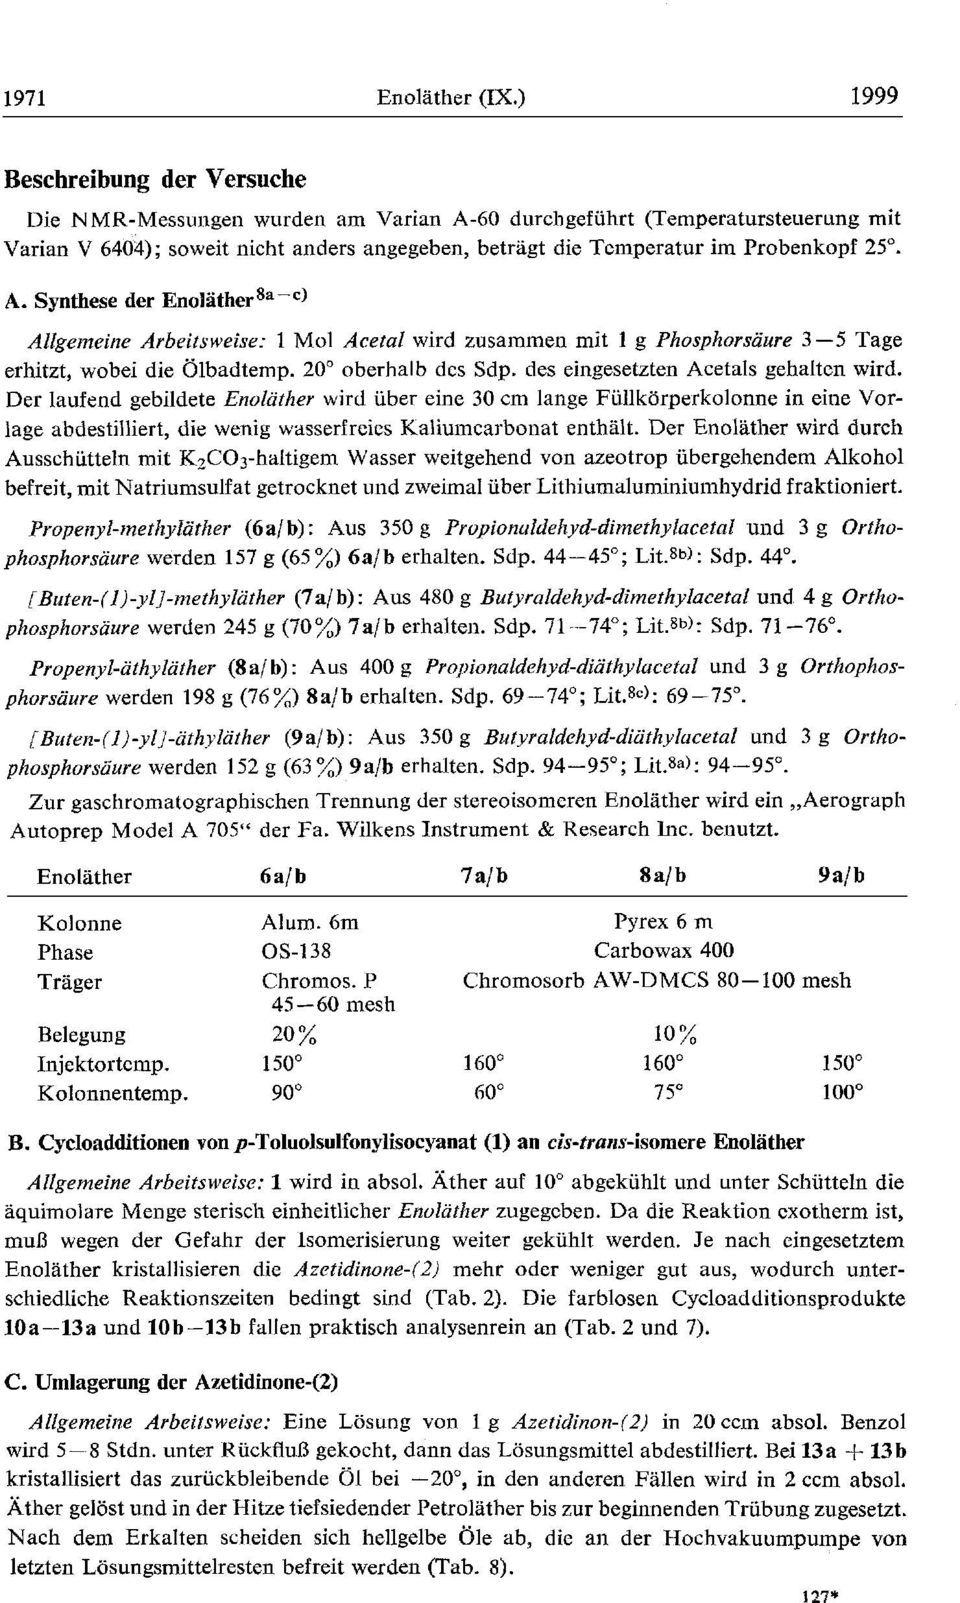 A. Synthese der Enolather8a-c) Allgerneine Arbeitsweise: 1 Mol Acetal wird zusammen mit 1 g Phosphorsaure 3-5 Tage erhitzt, wobei die olbadtemp. 20" oberhalb dcs Sdp.